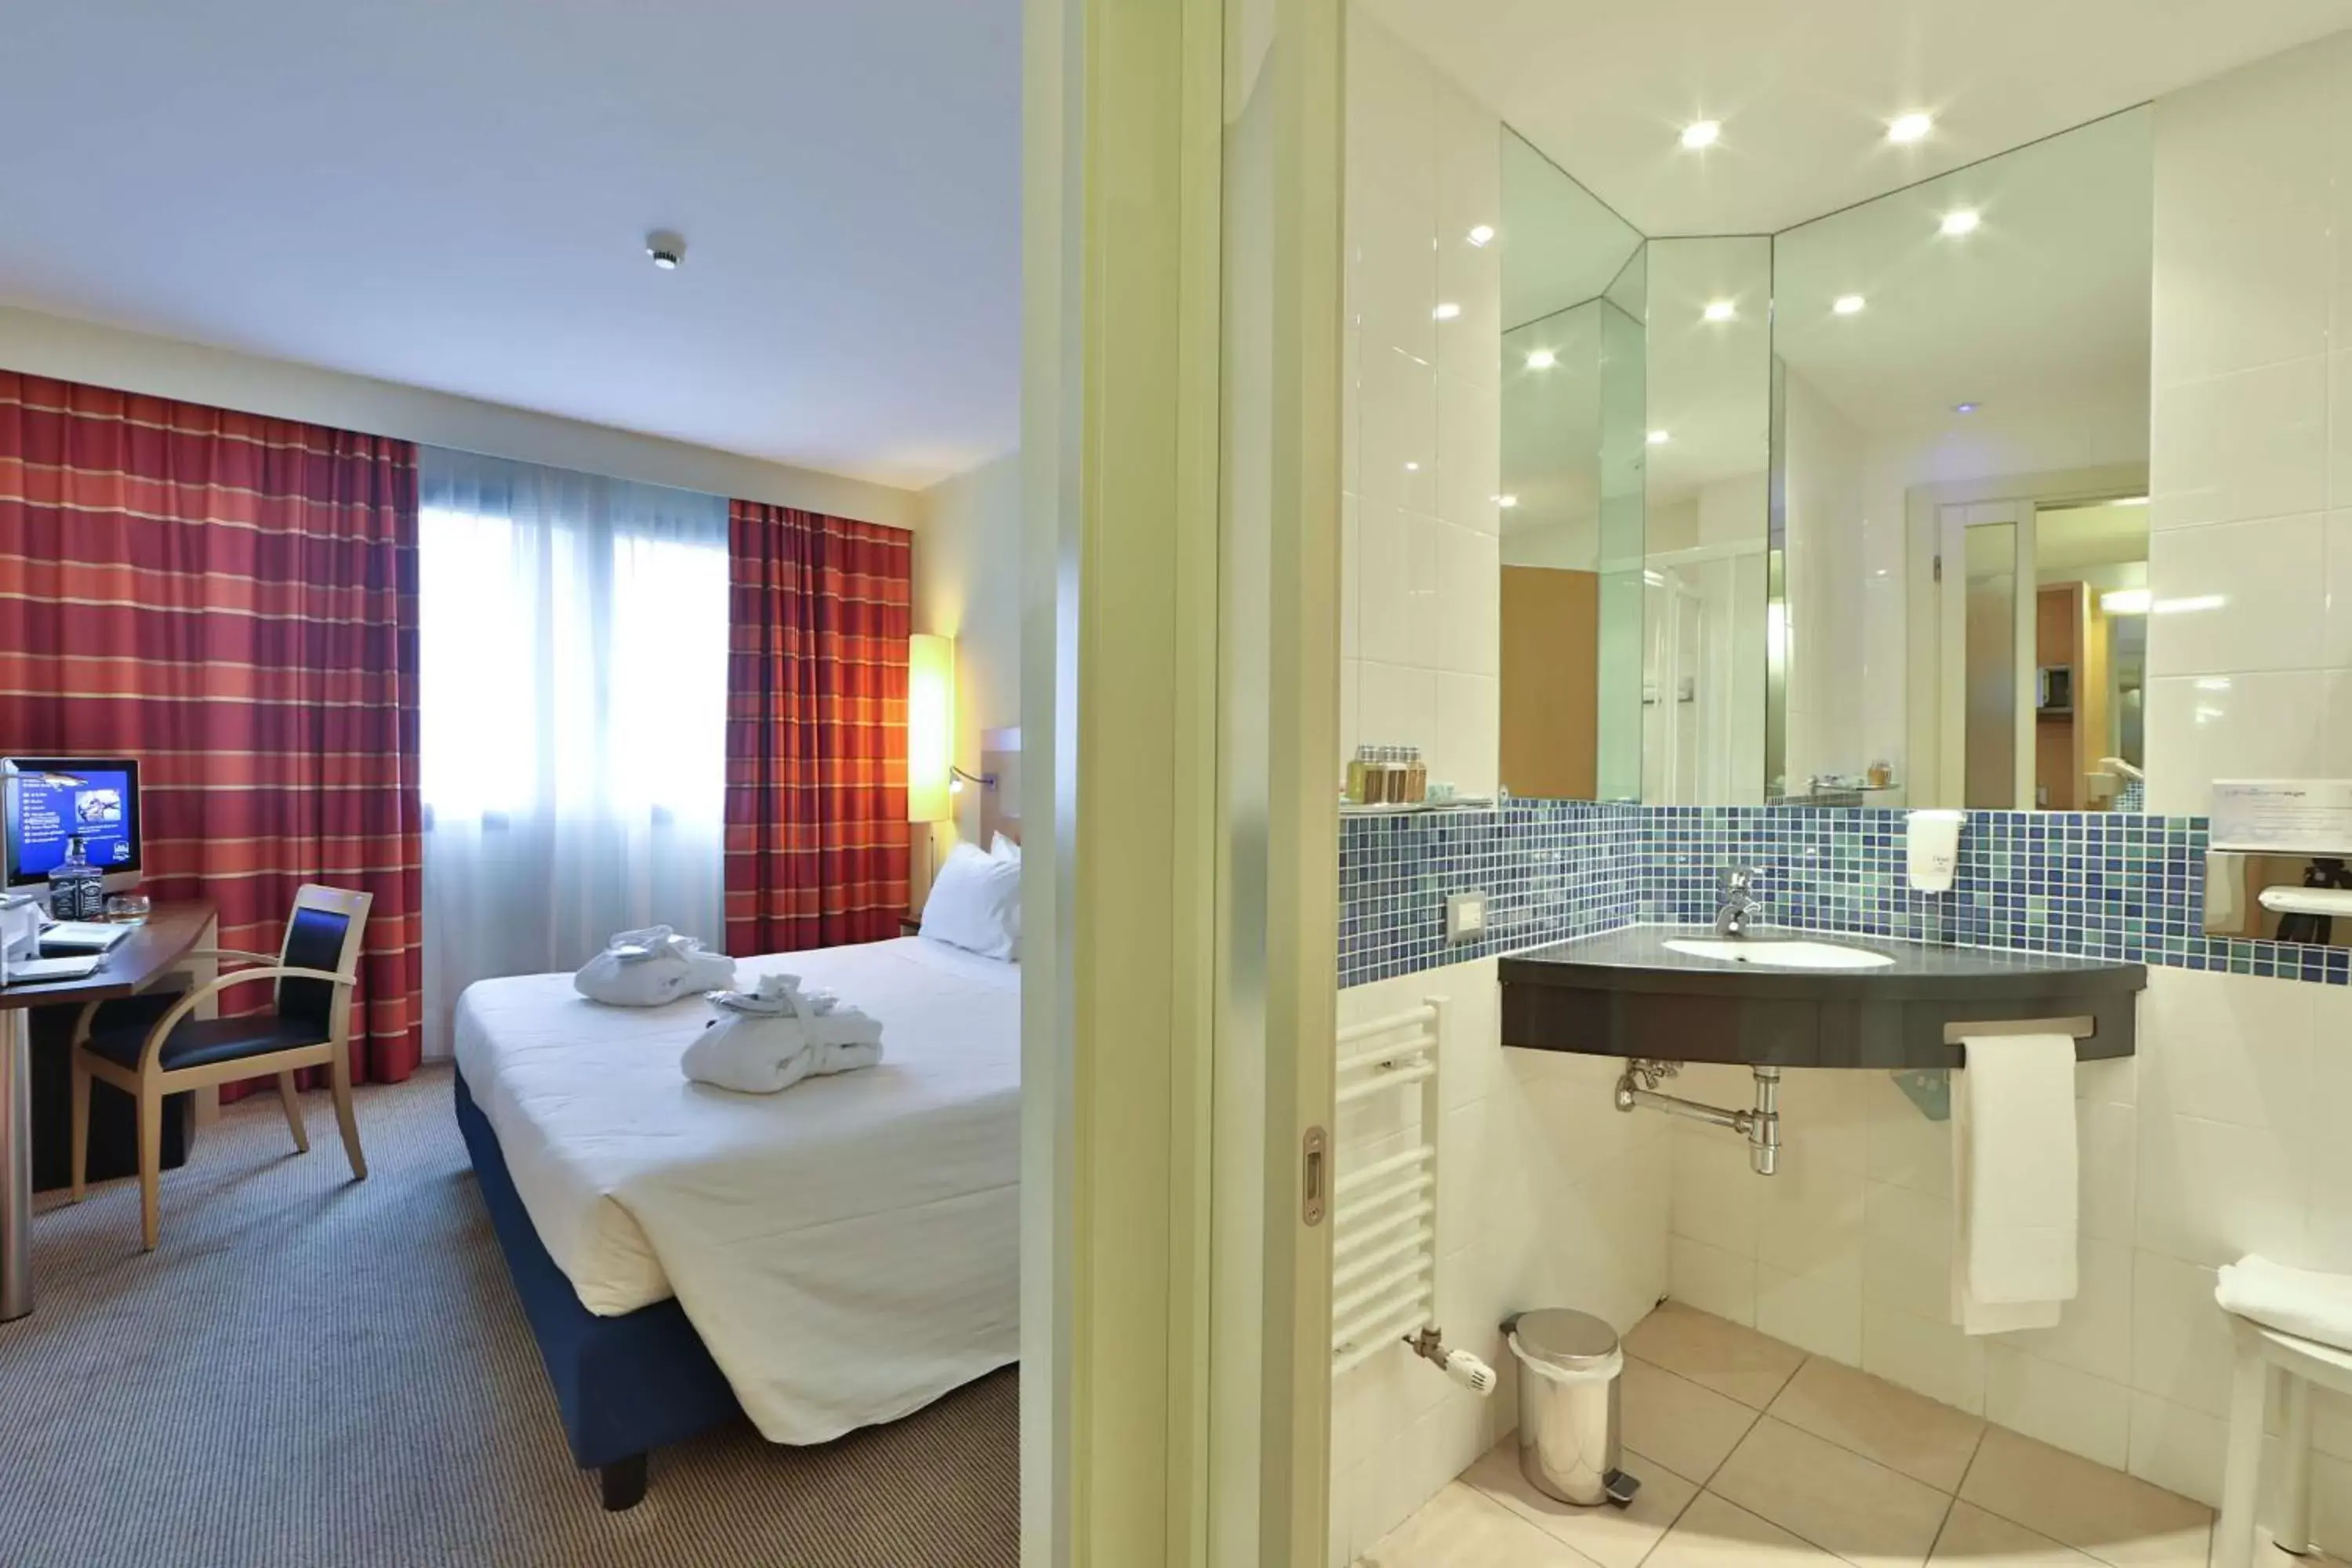 Bedroom, Bathroom in Best Western Palace Inn Hotel